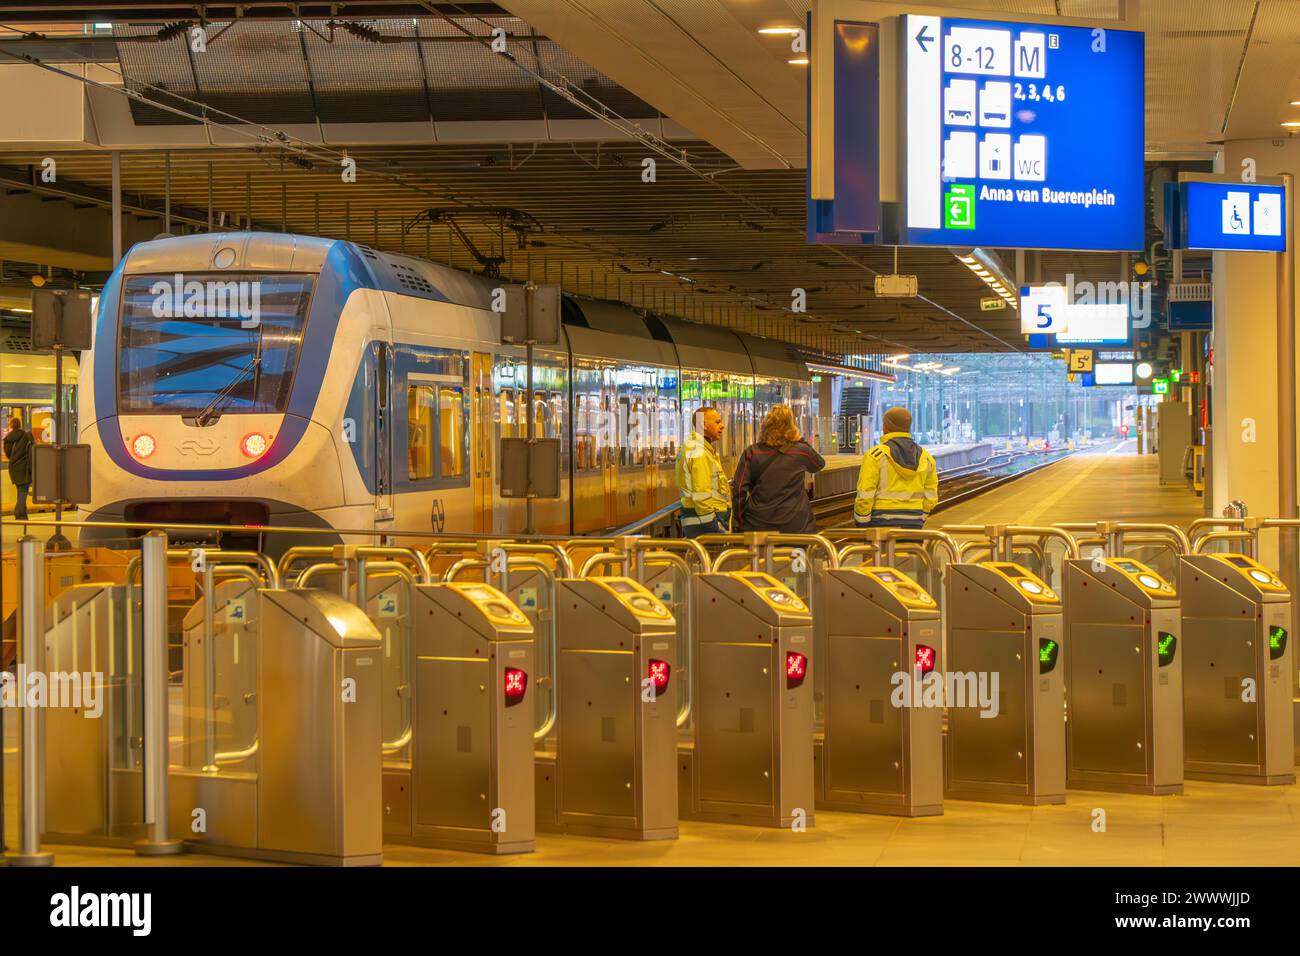 Sprinter Zug von NS Nederlandse Spoorwegen niederländischer Eisenbahnbetreiber am Haager Hauptbahnhof. Am frühen Morgen. Sicherheitstore, trainiere persönlich. Stockfoto